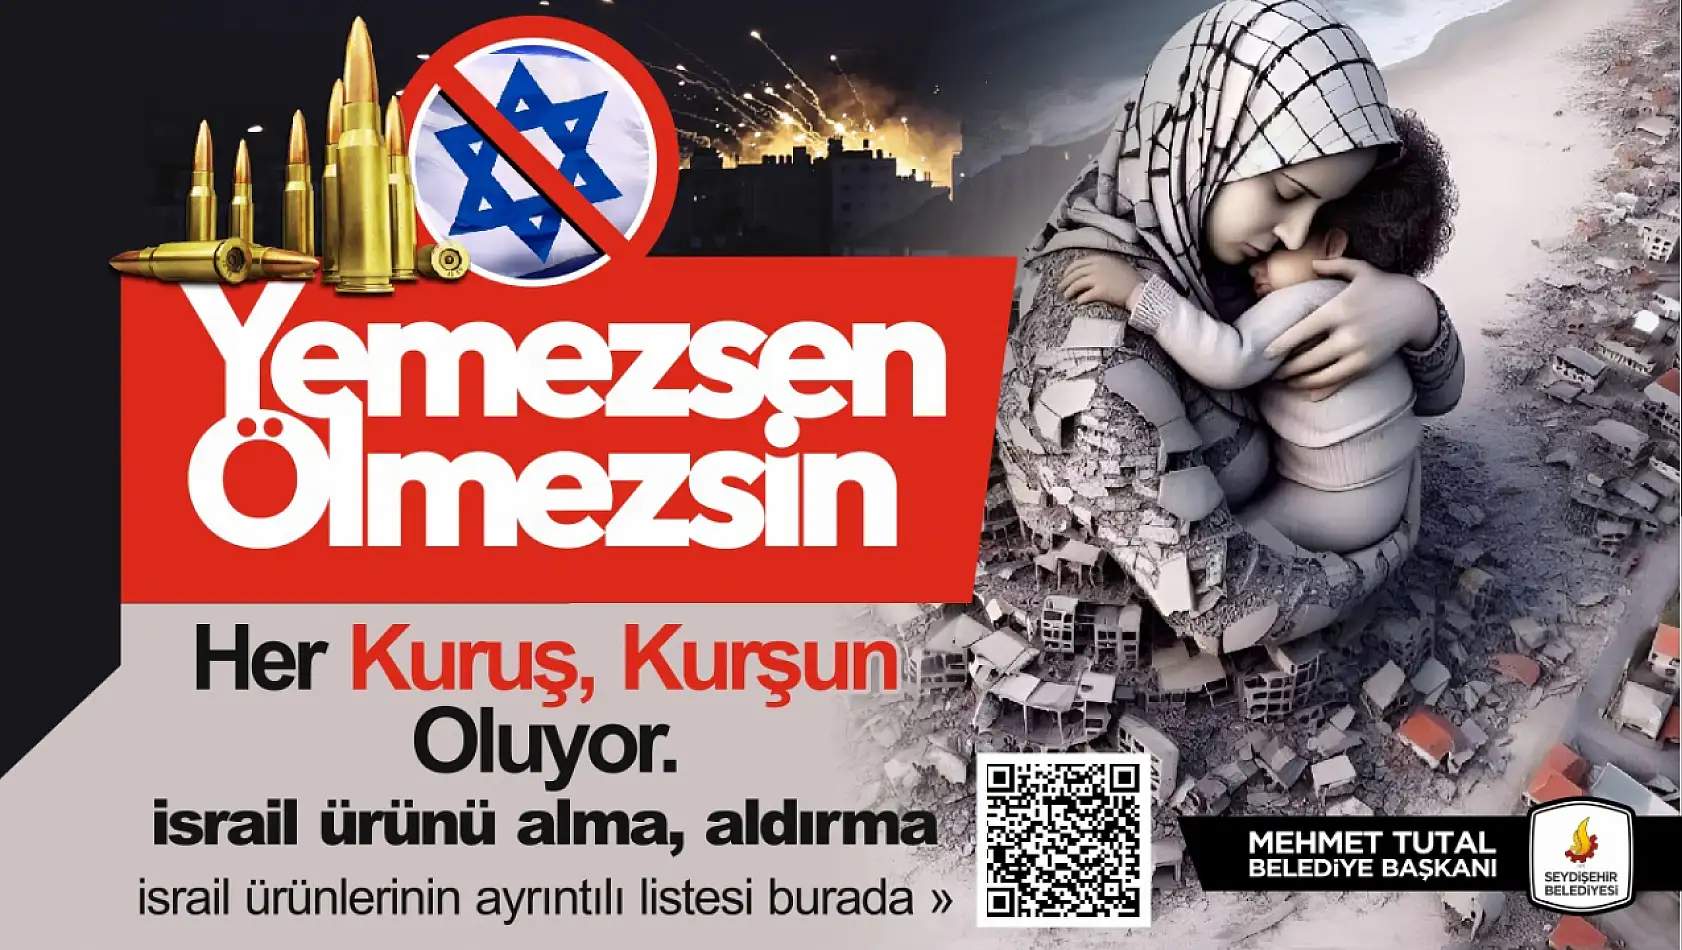 Konya Seydişehir Belediyesi'de boykota katıldı! Tesislerde İsrail Ürünü Kullanılmayacak!